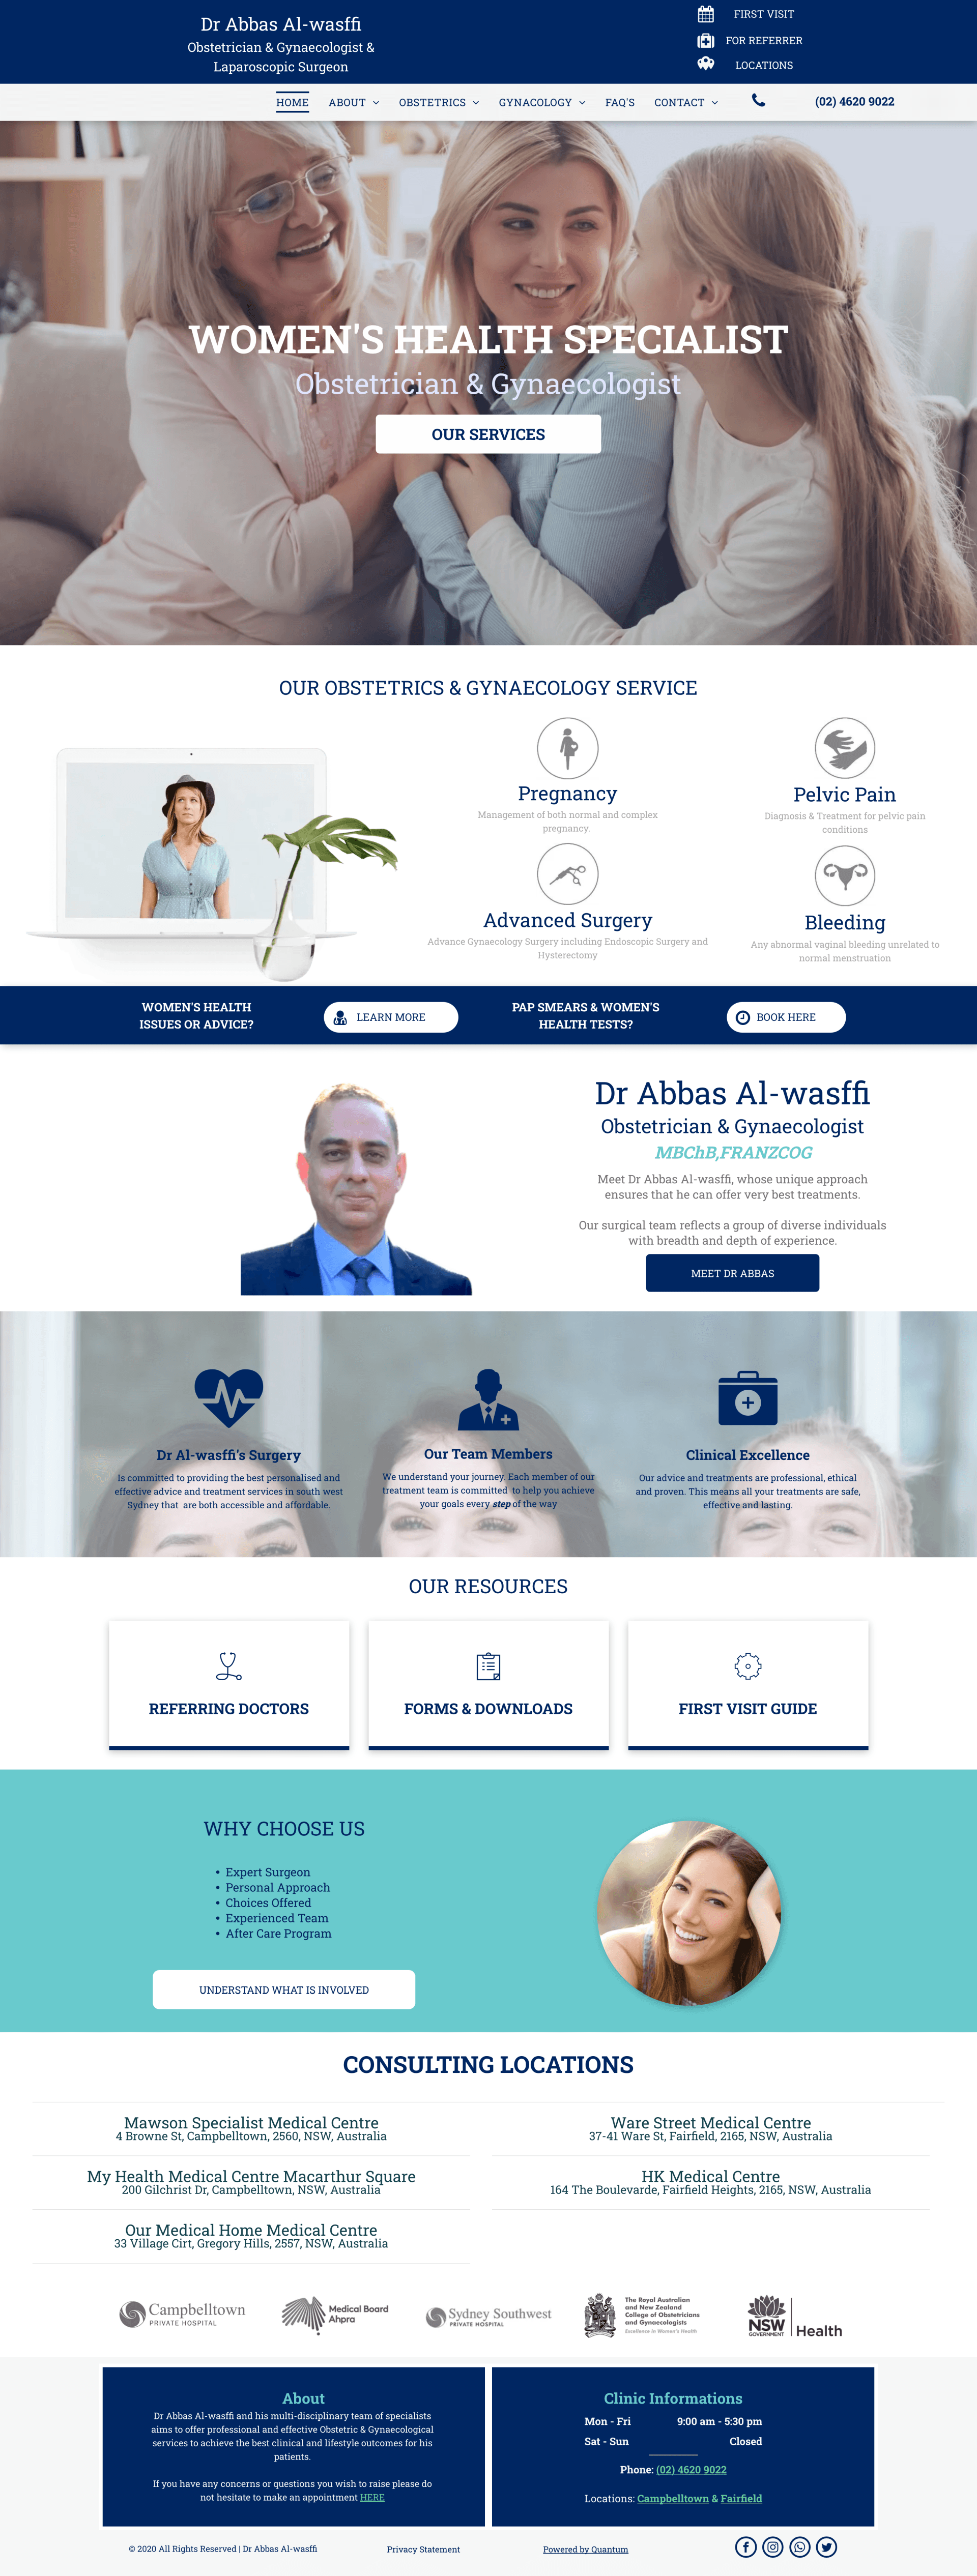 Basic design for a solo practitioner website desktop version